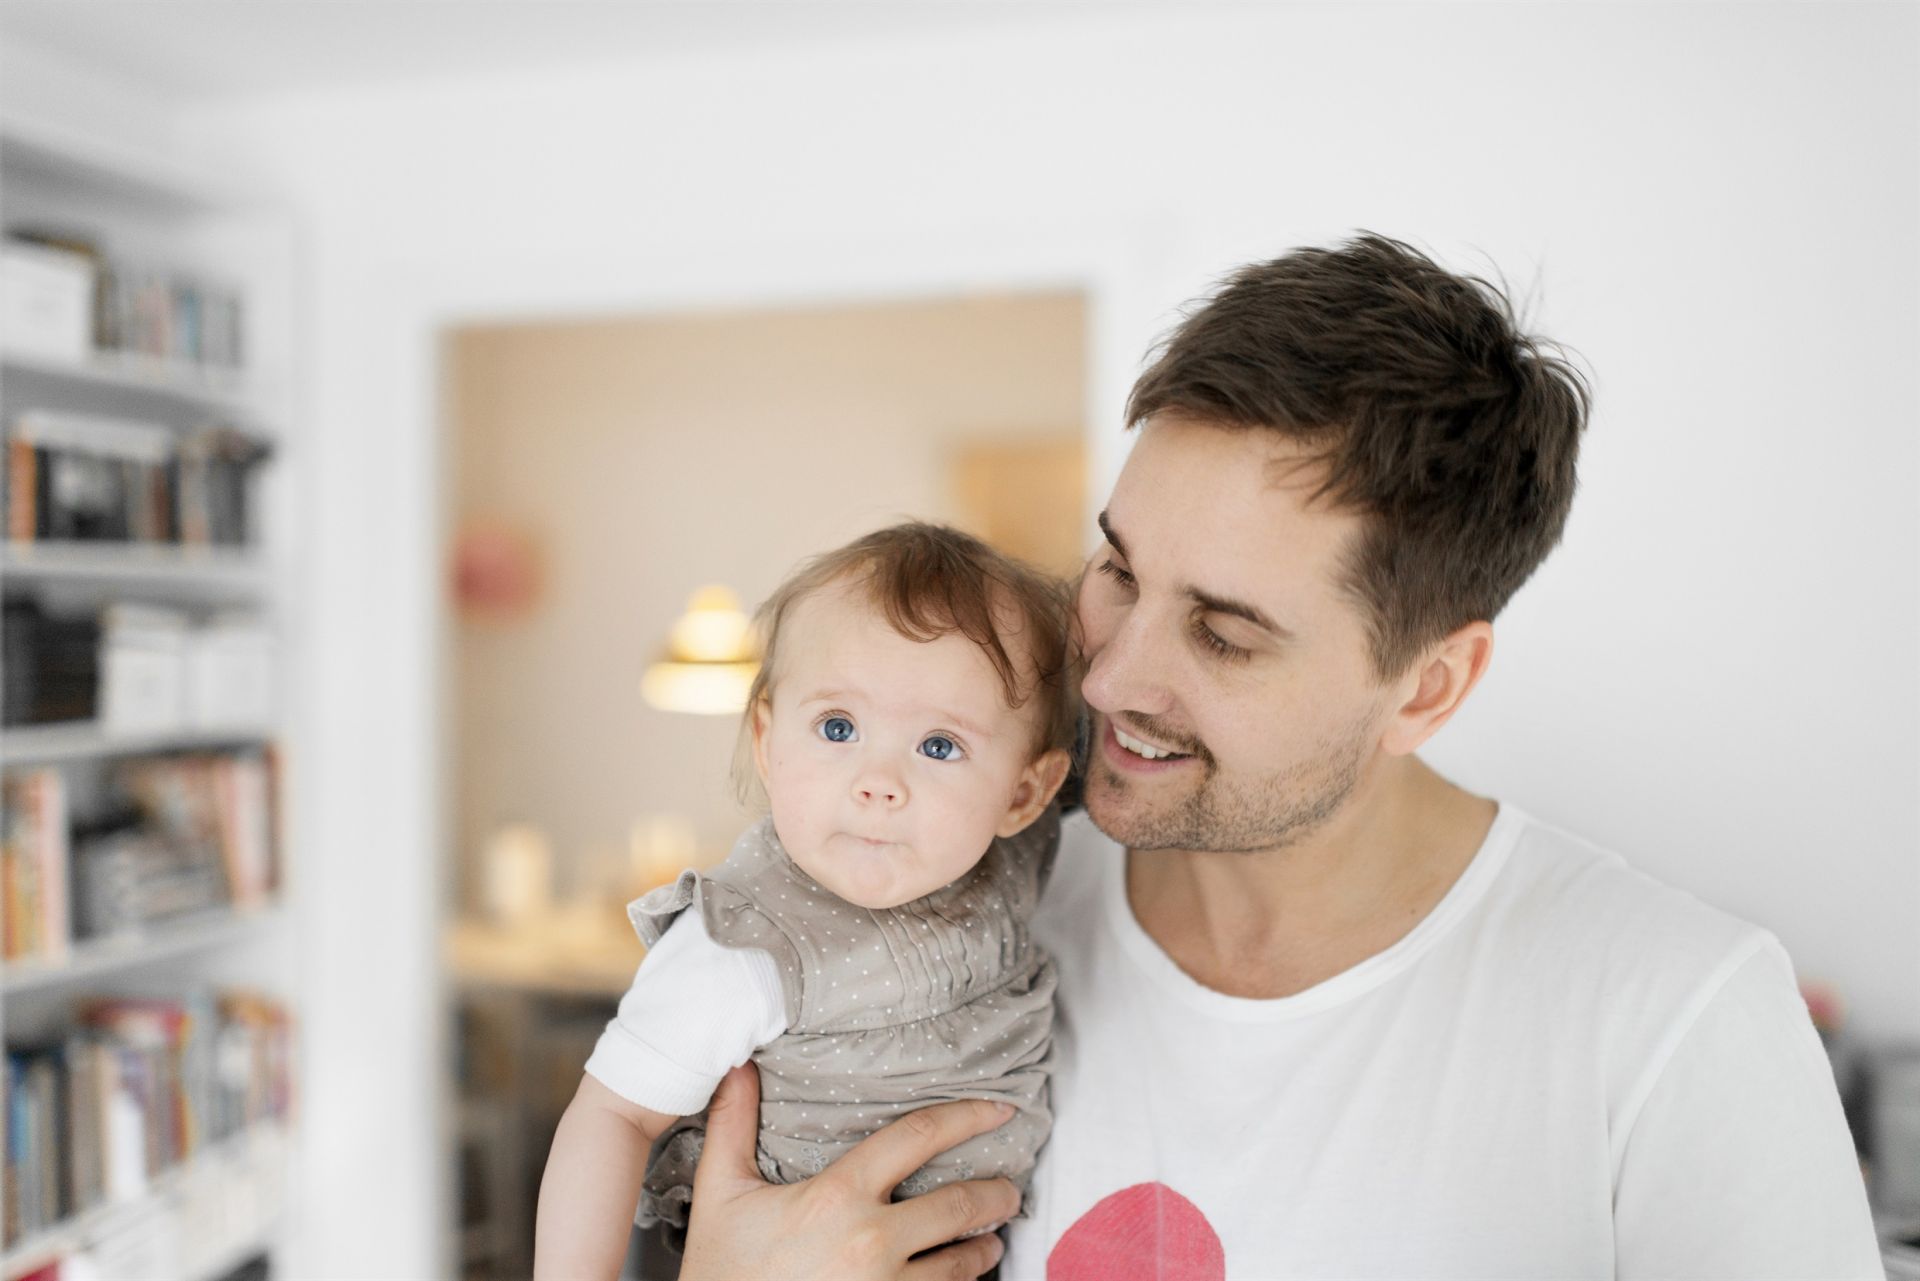 En man håller ett barn inne i en lägenhet. Mannen ser glad ut.